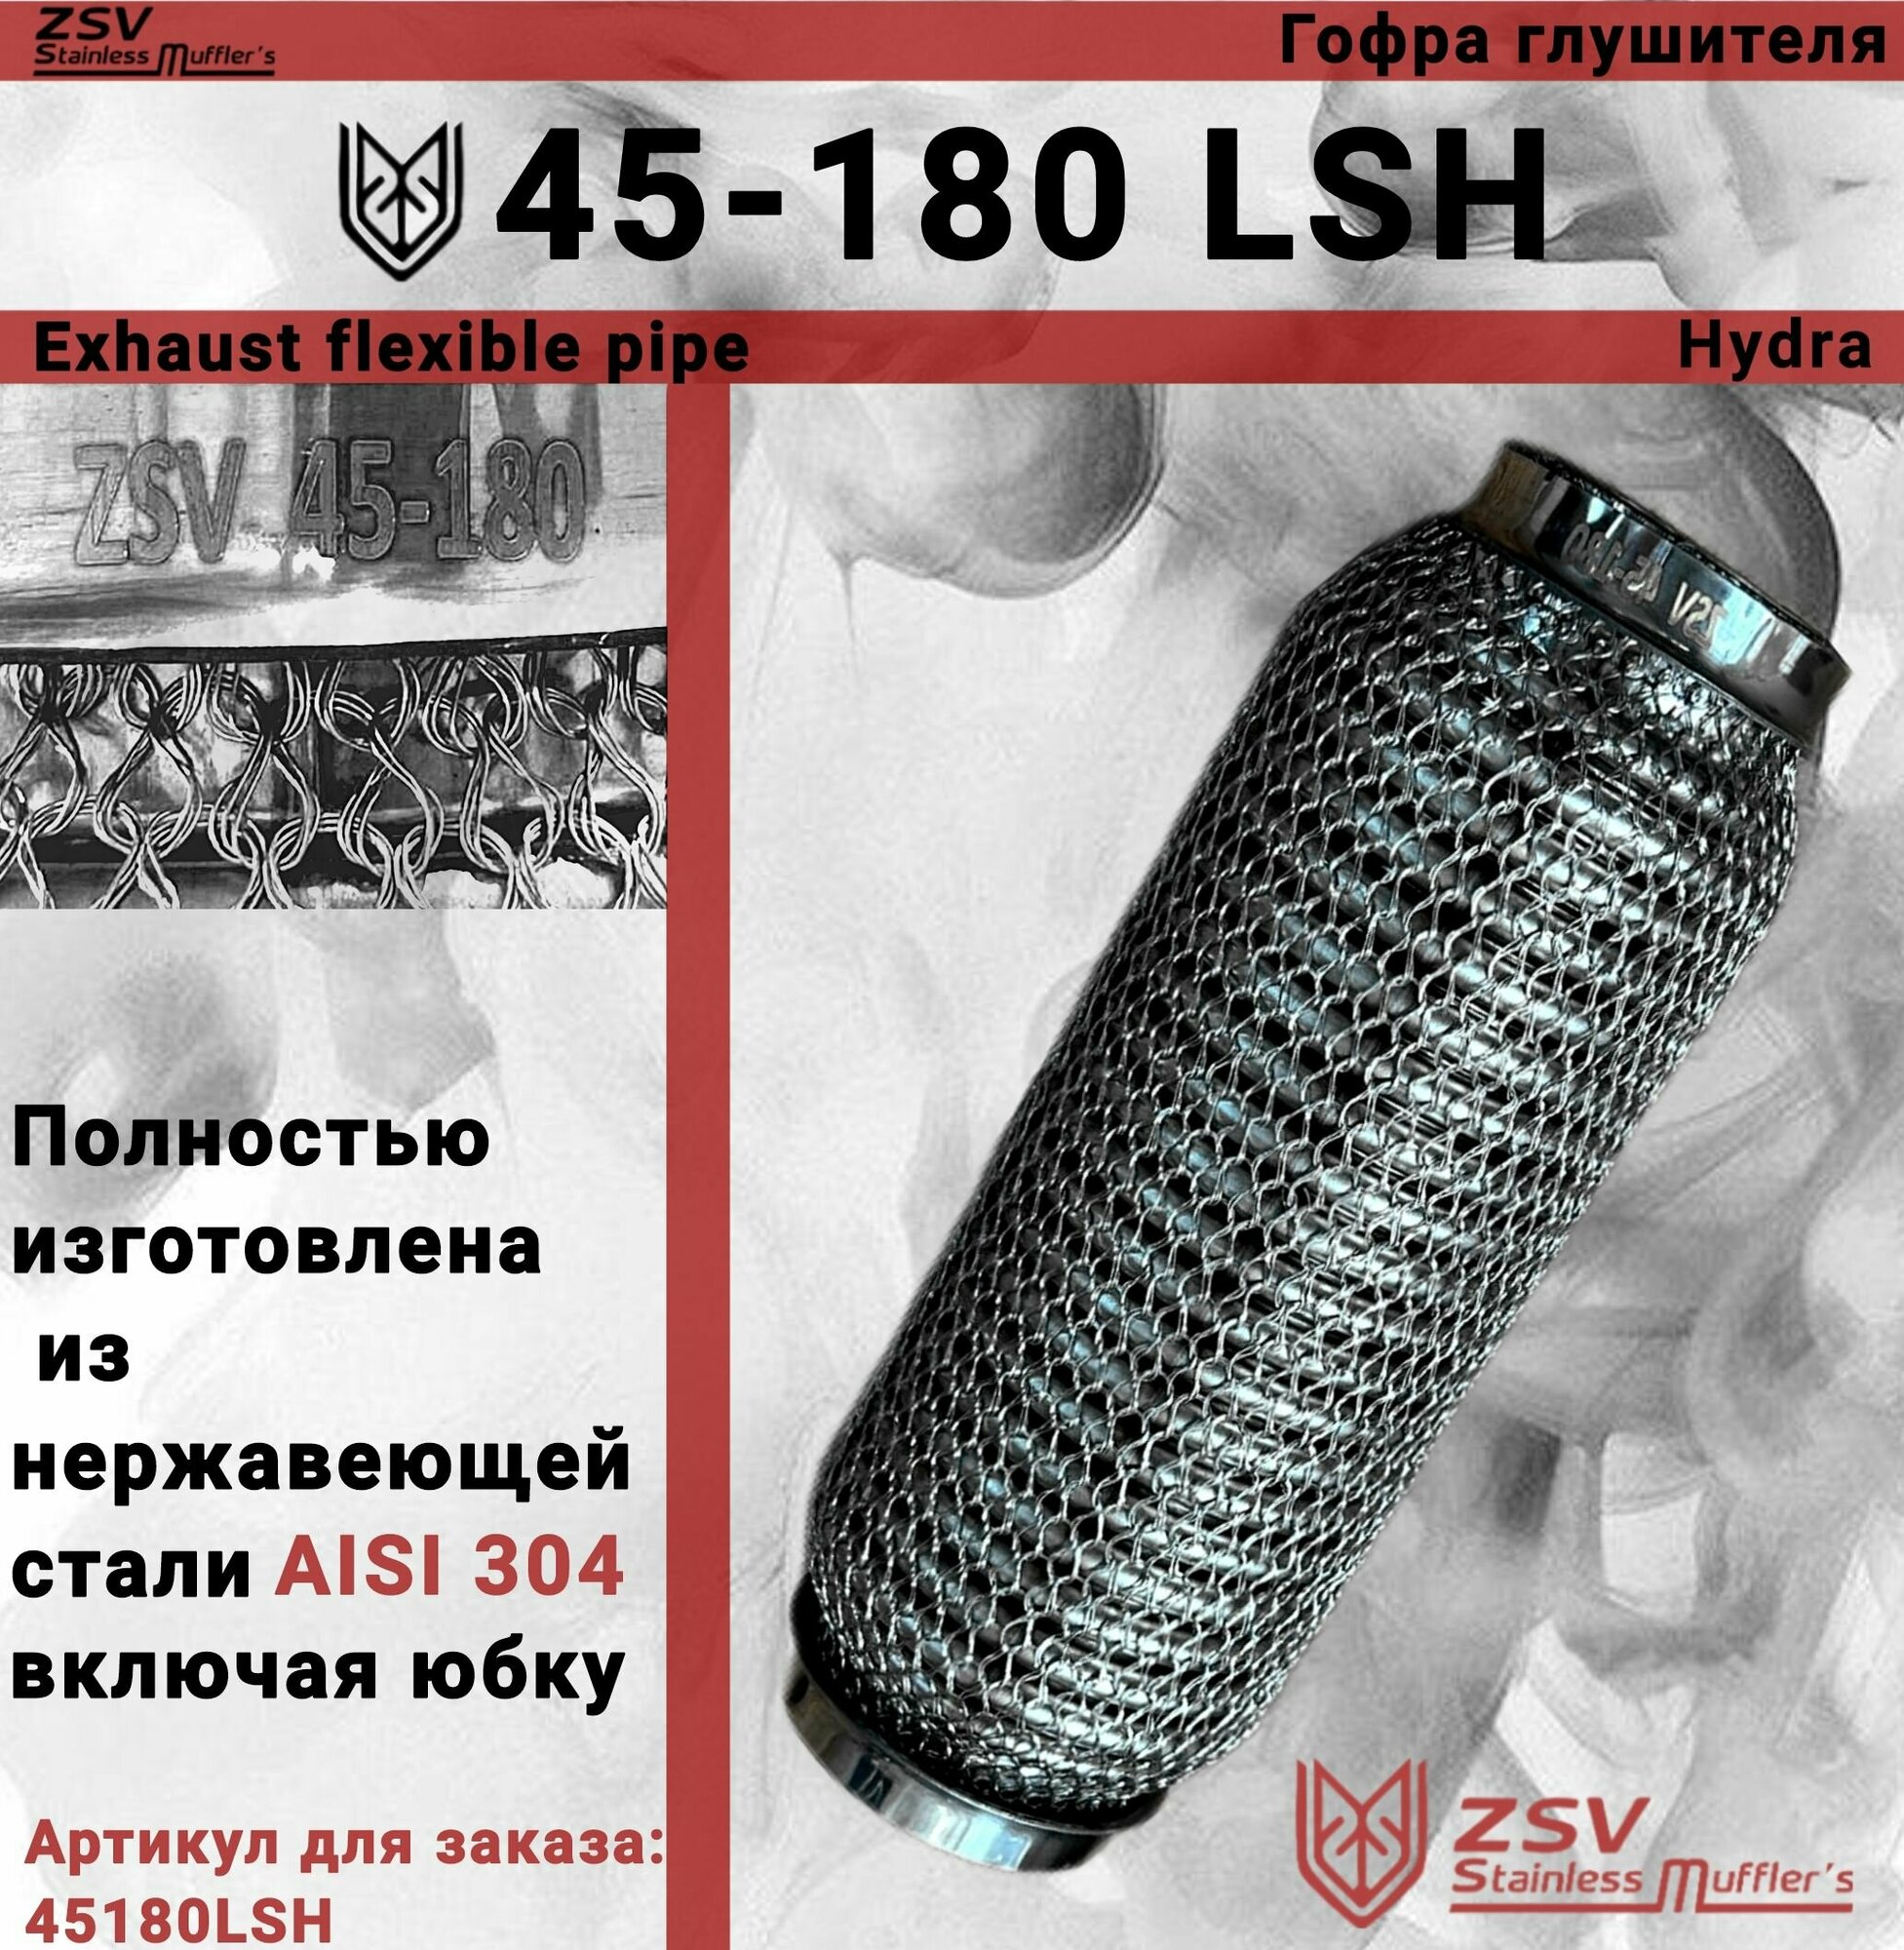 Гофра глушителя Hydra type 45-180 Улучшенная! полностью изготовлена из нержавеющей стали AISI 304